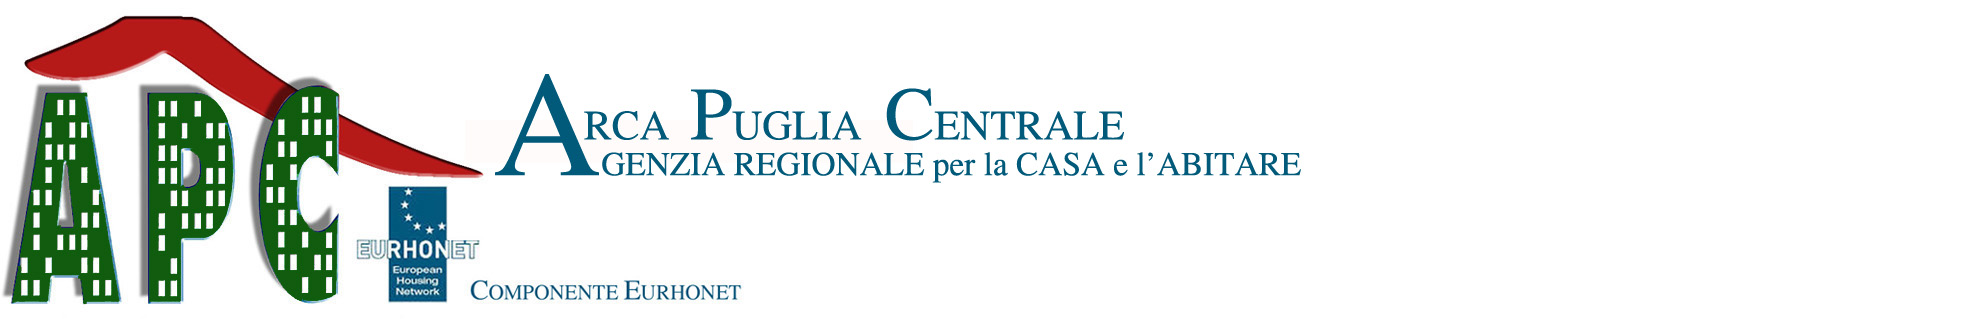 Nuovo logo Arca Puglia Centrale